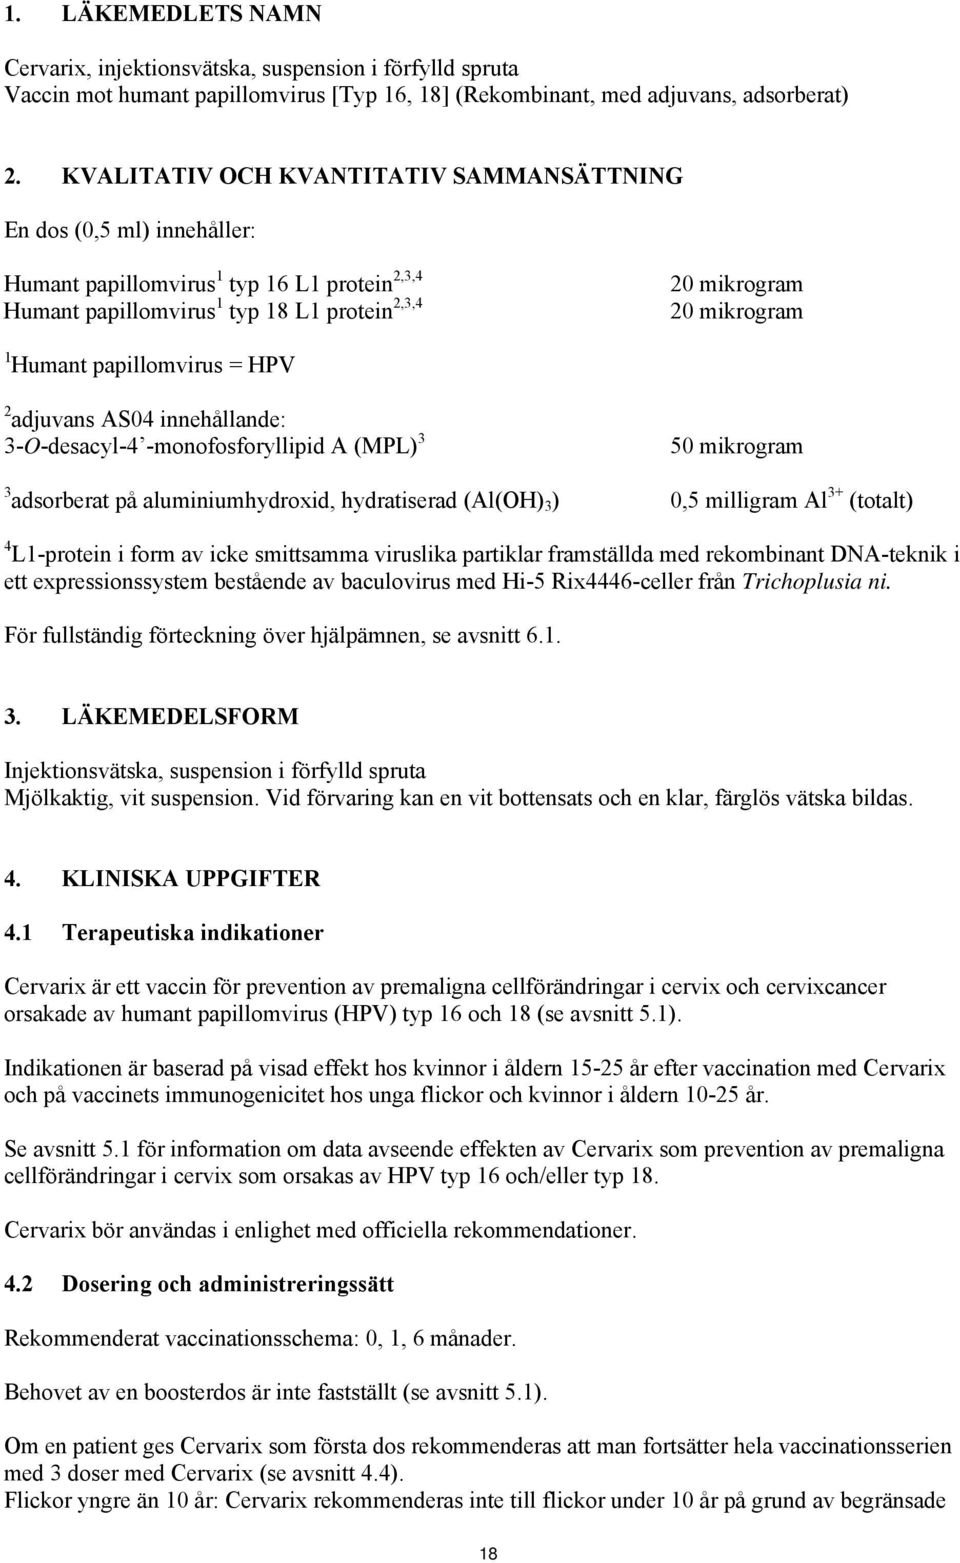 papillomvirus = HPV 2 adjuvans AS04 innehållande: 3-O-desacyl-4 -monofosforyllipid A (MPL) 3 50 mikrogram 3 adsorberat på aluminiumhydroxid, hydratiserad (Al(OH) 3 ) 0,5 milligram Al 3+ (totalt) 4